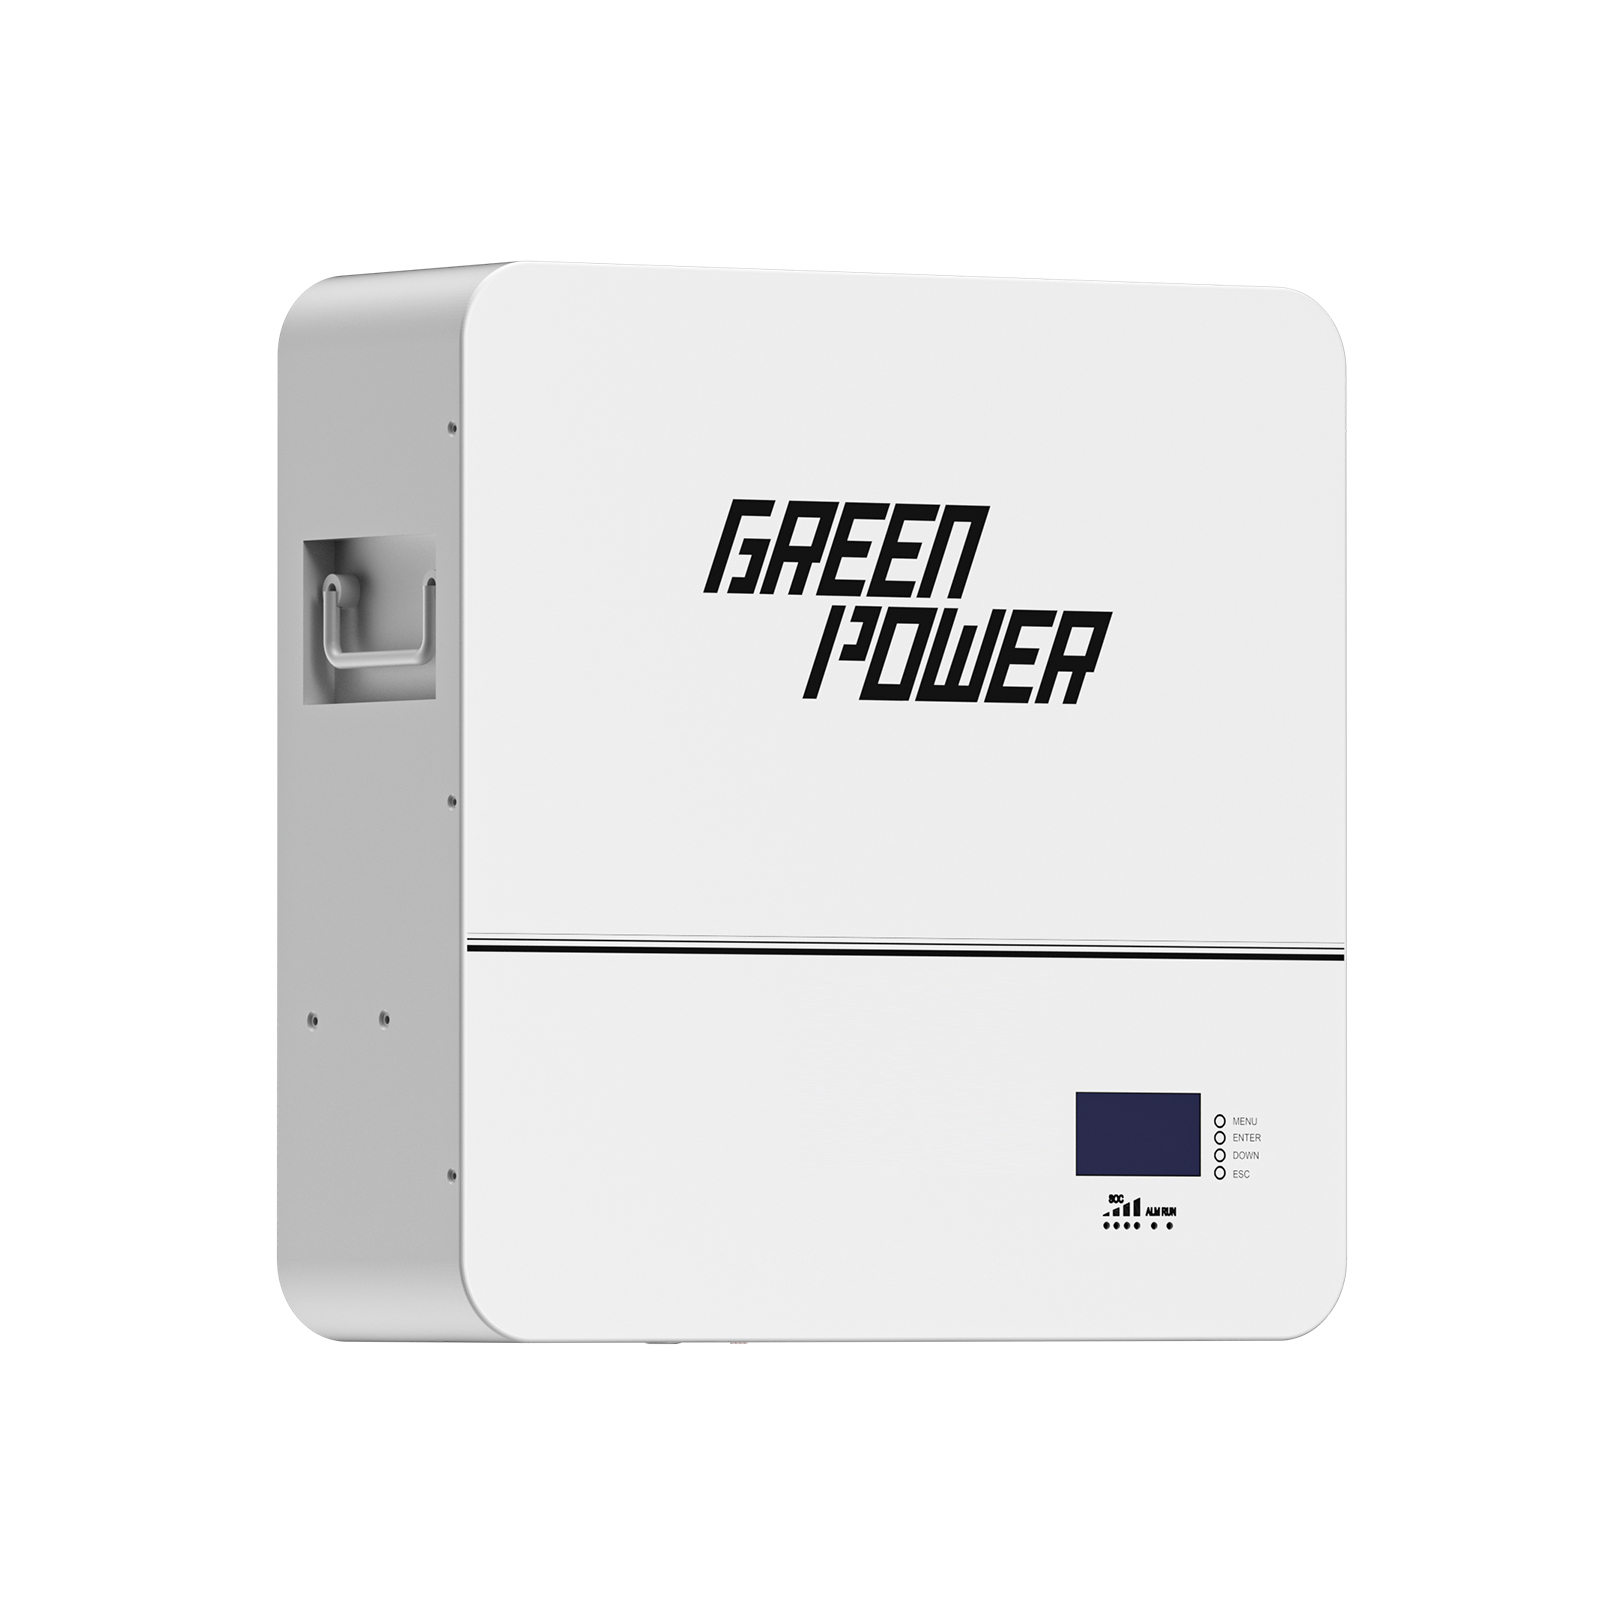 Batería de respaldo para el hogar de 10240 Wh |Poder verde